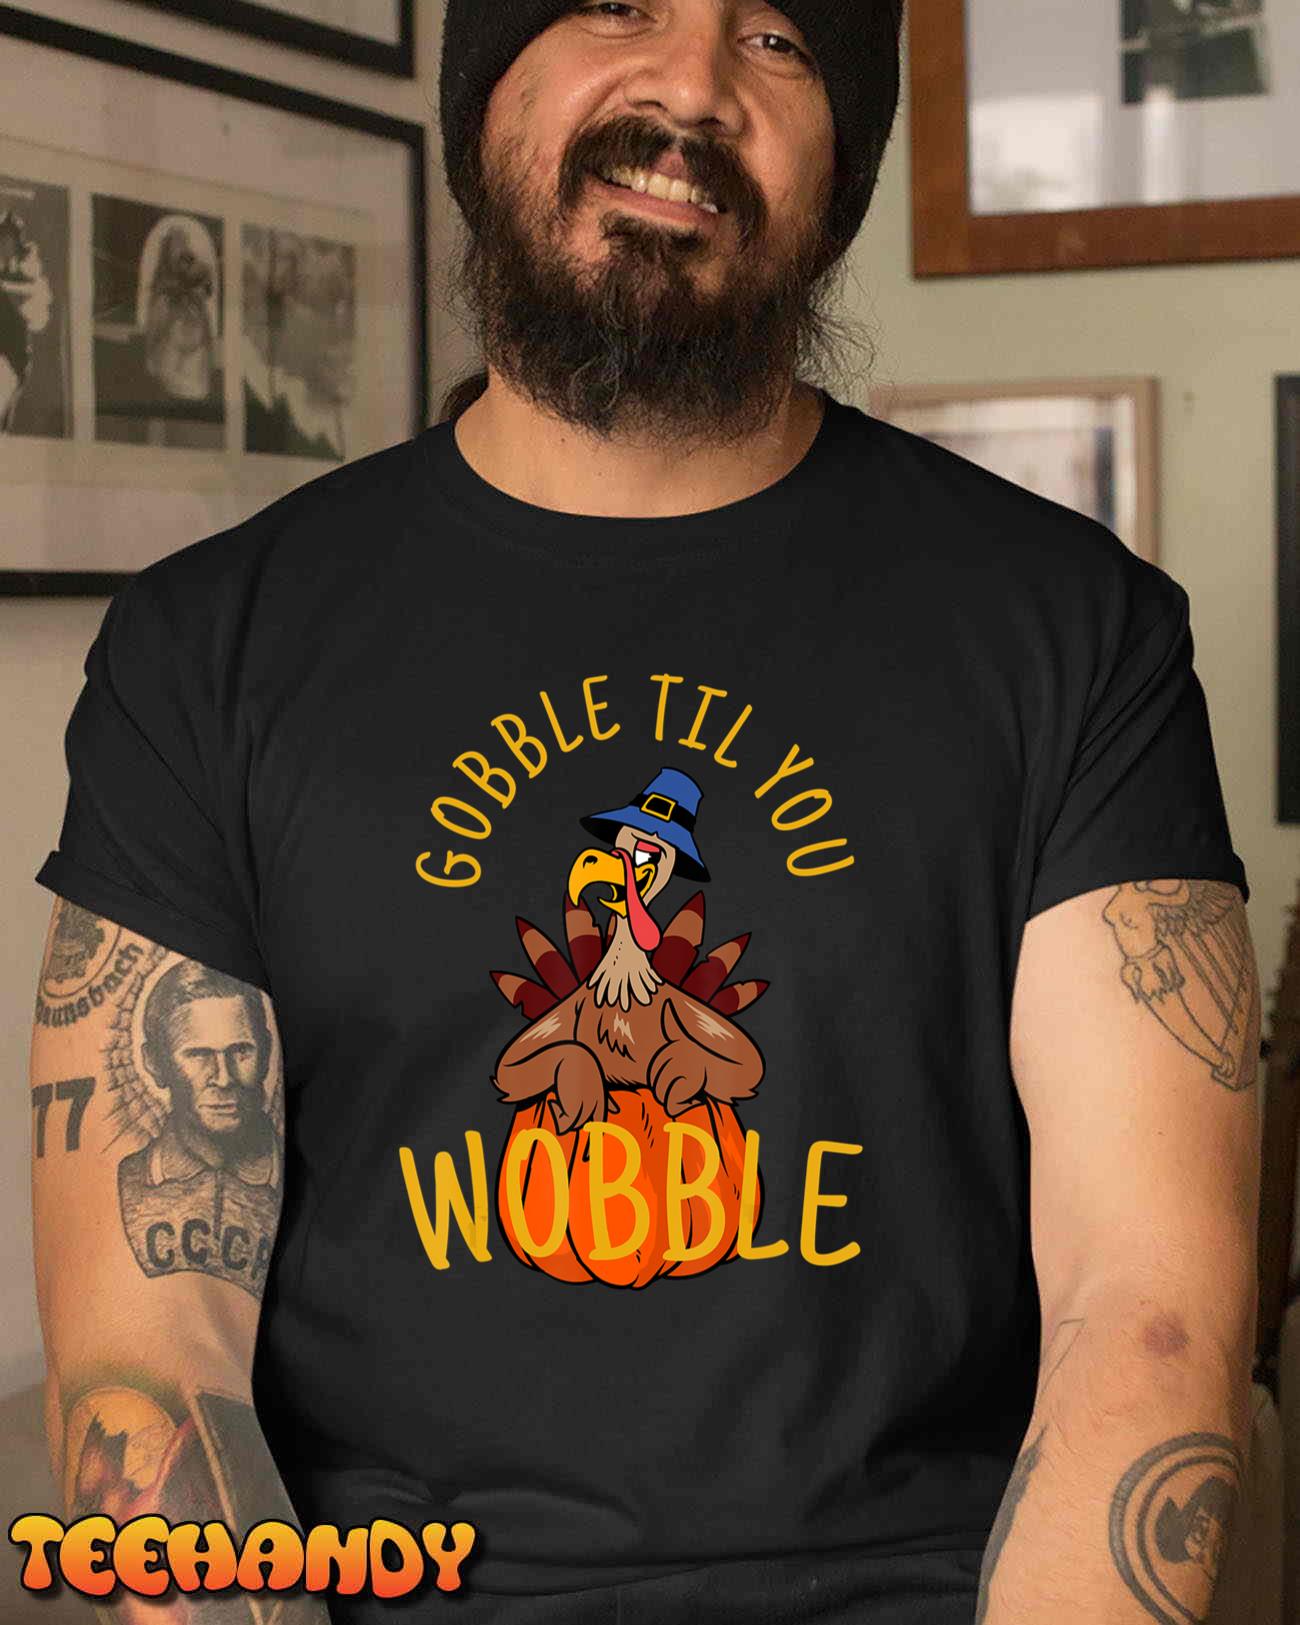 Gobble Til You Wobble T-Shirt Thanksgiving Day Gift T-Shirt